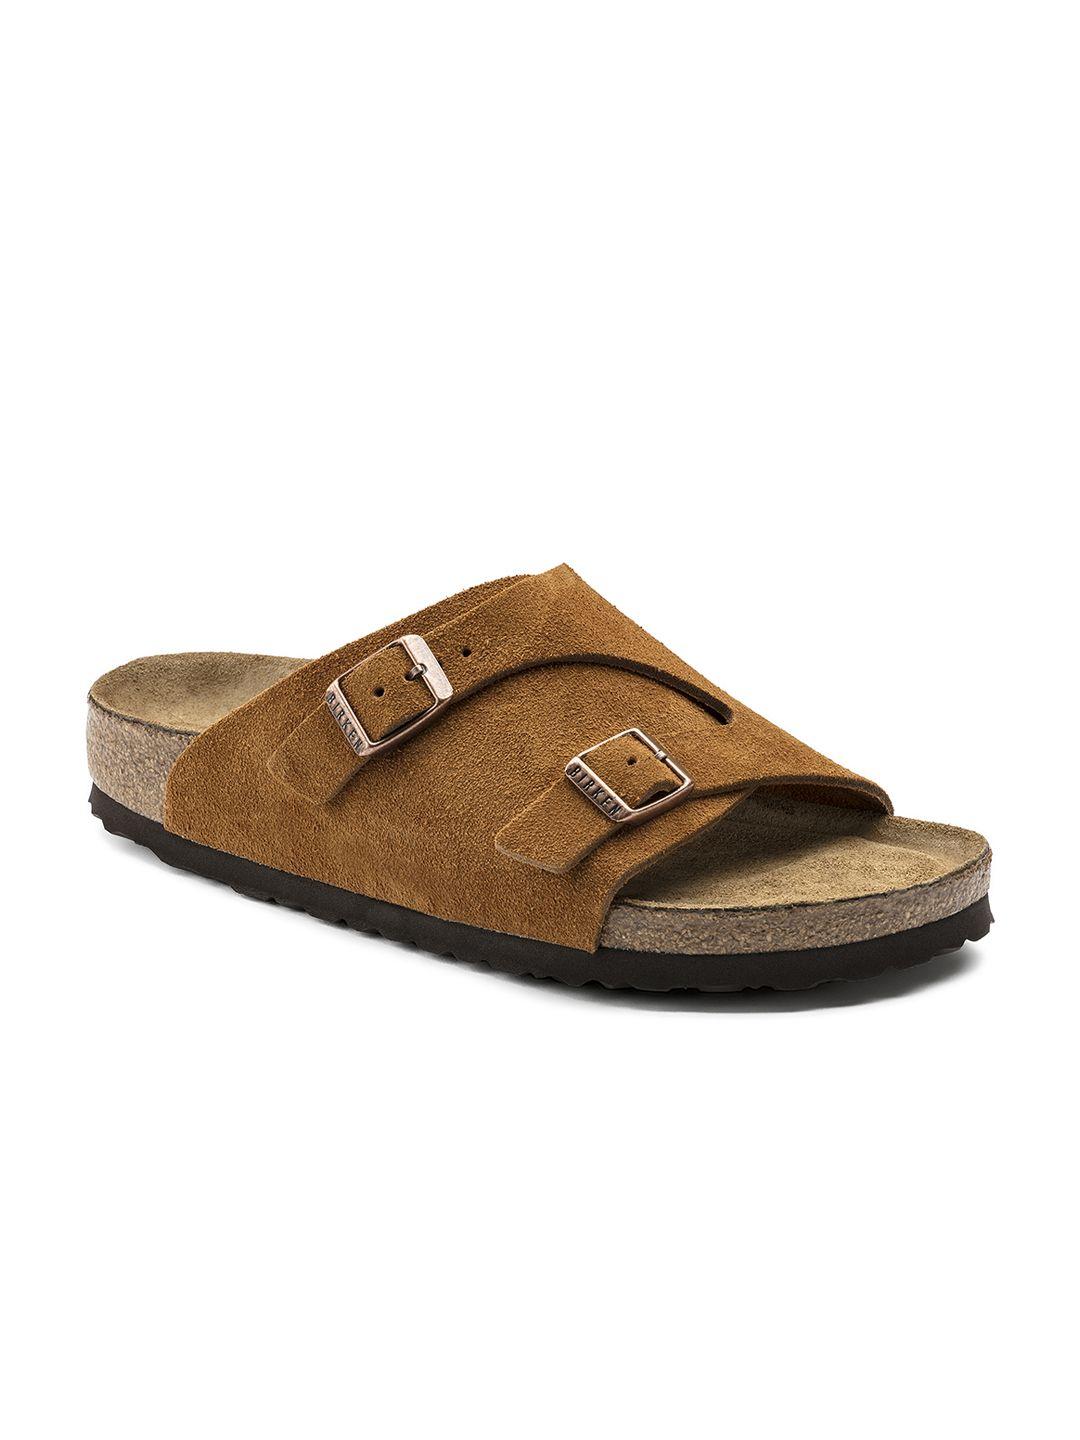 birkenstock unisex tan brown zurich regular width comfort sandals